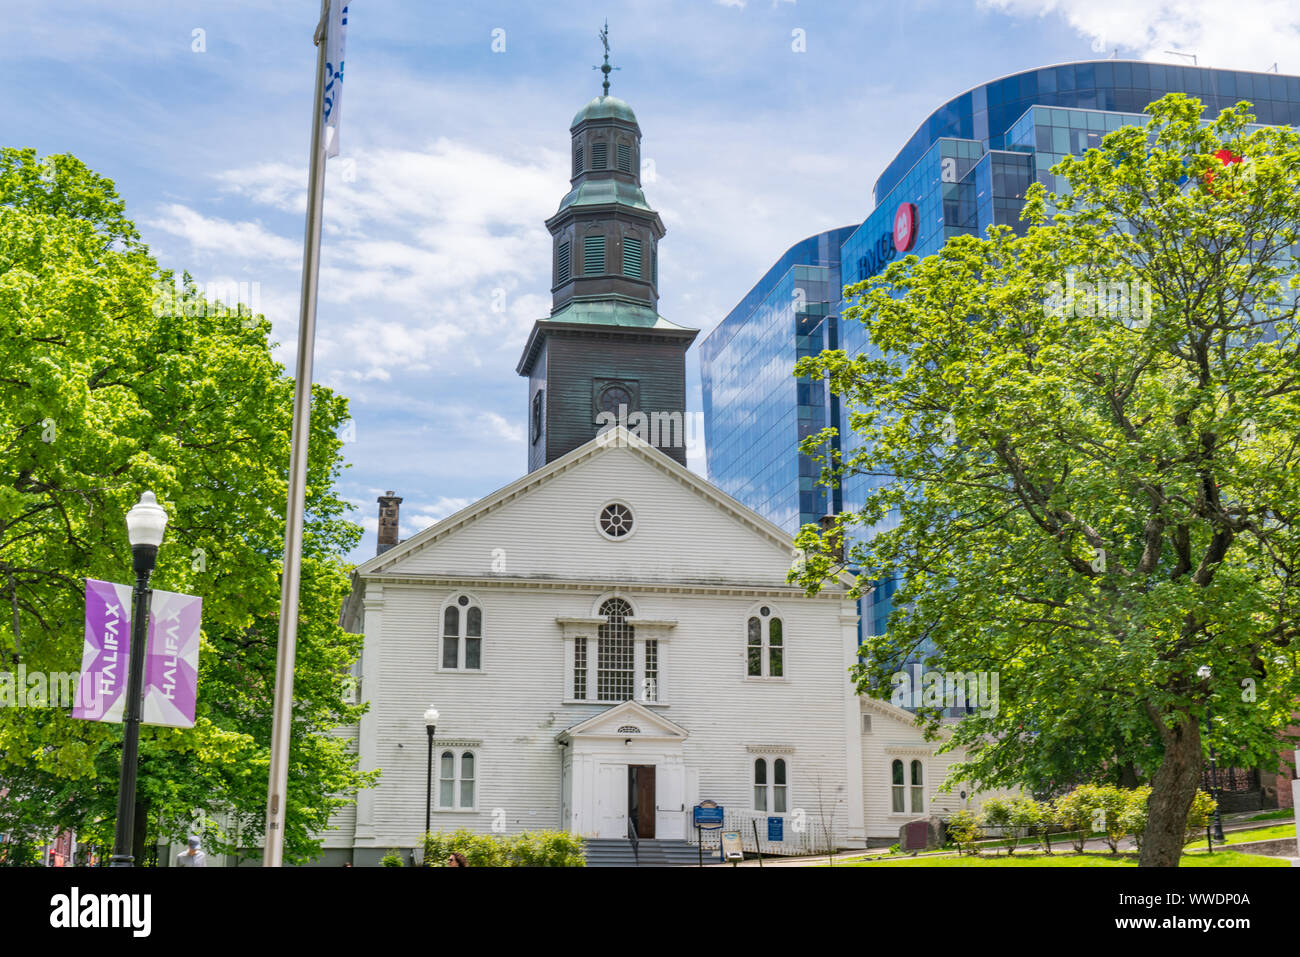 Halifax, Canada - le 19 juin 2019 : façade historique de l'église anglicane Saint Paul's sur la place Grand Parade Square à Halifax, Nouvelle-Écosse, Canada Banque D'Images